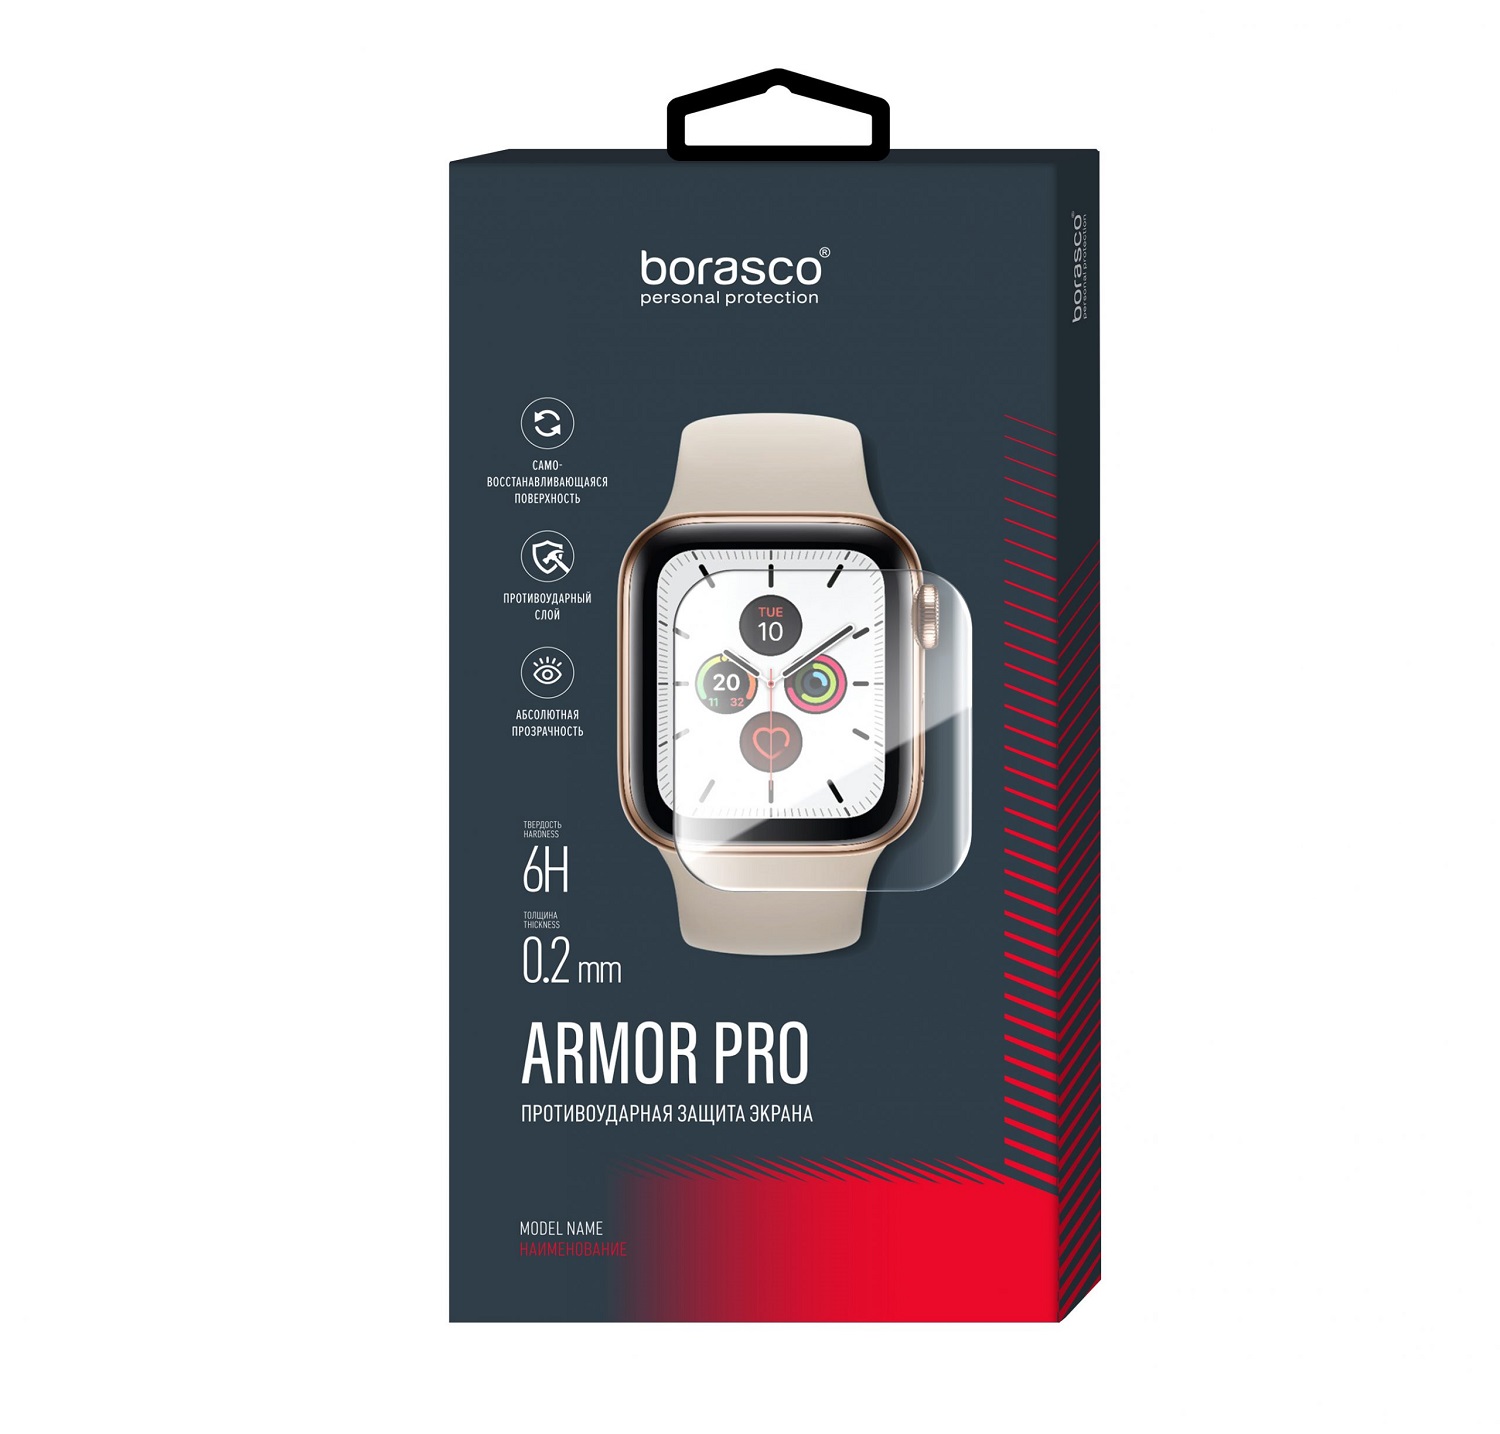 Защита экрана BoraSCO Armor Pro для Honor Band 3 защита экрана borasco armor pro для honor watch se